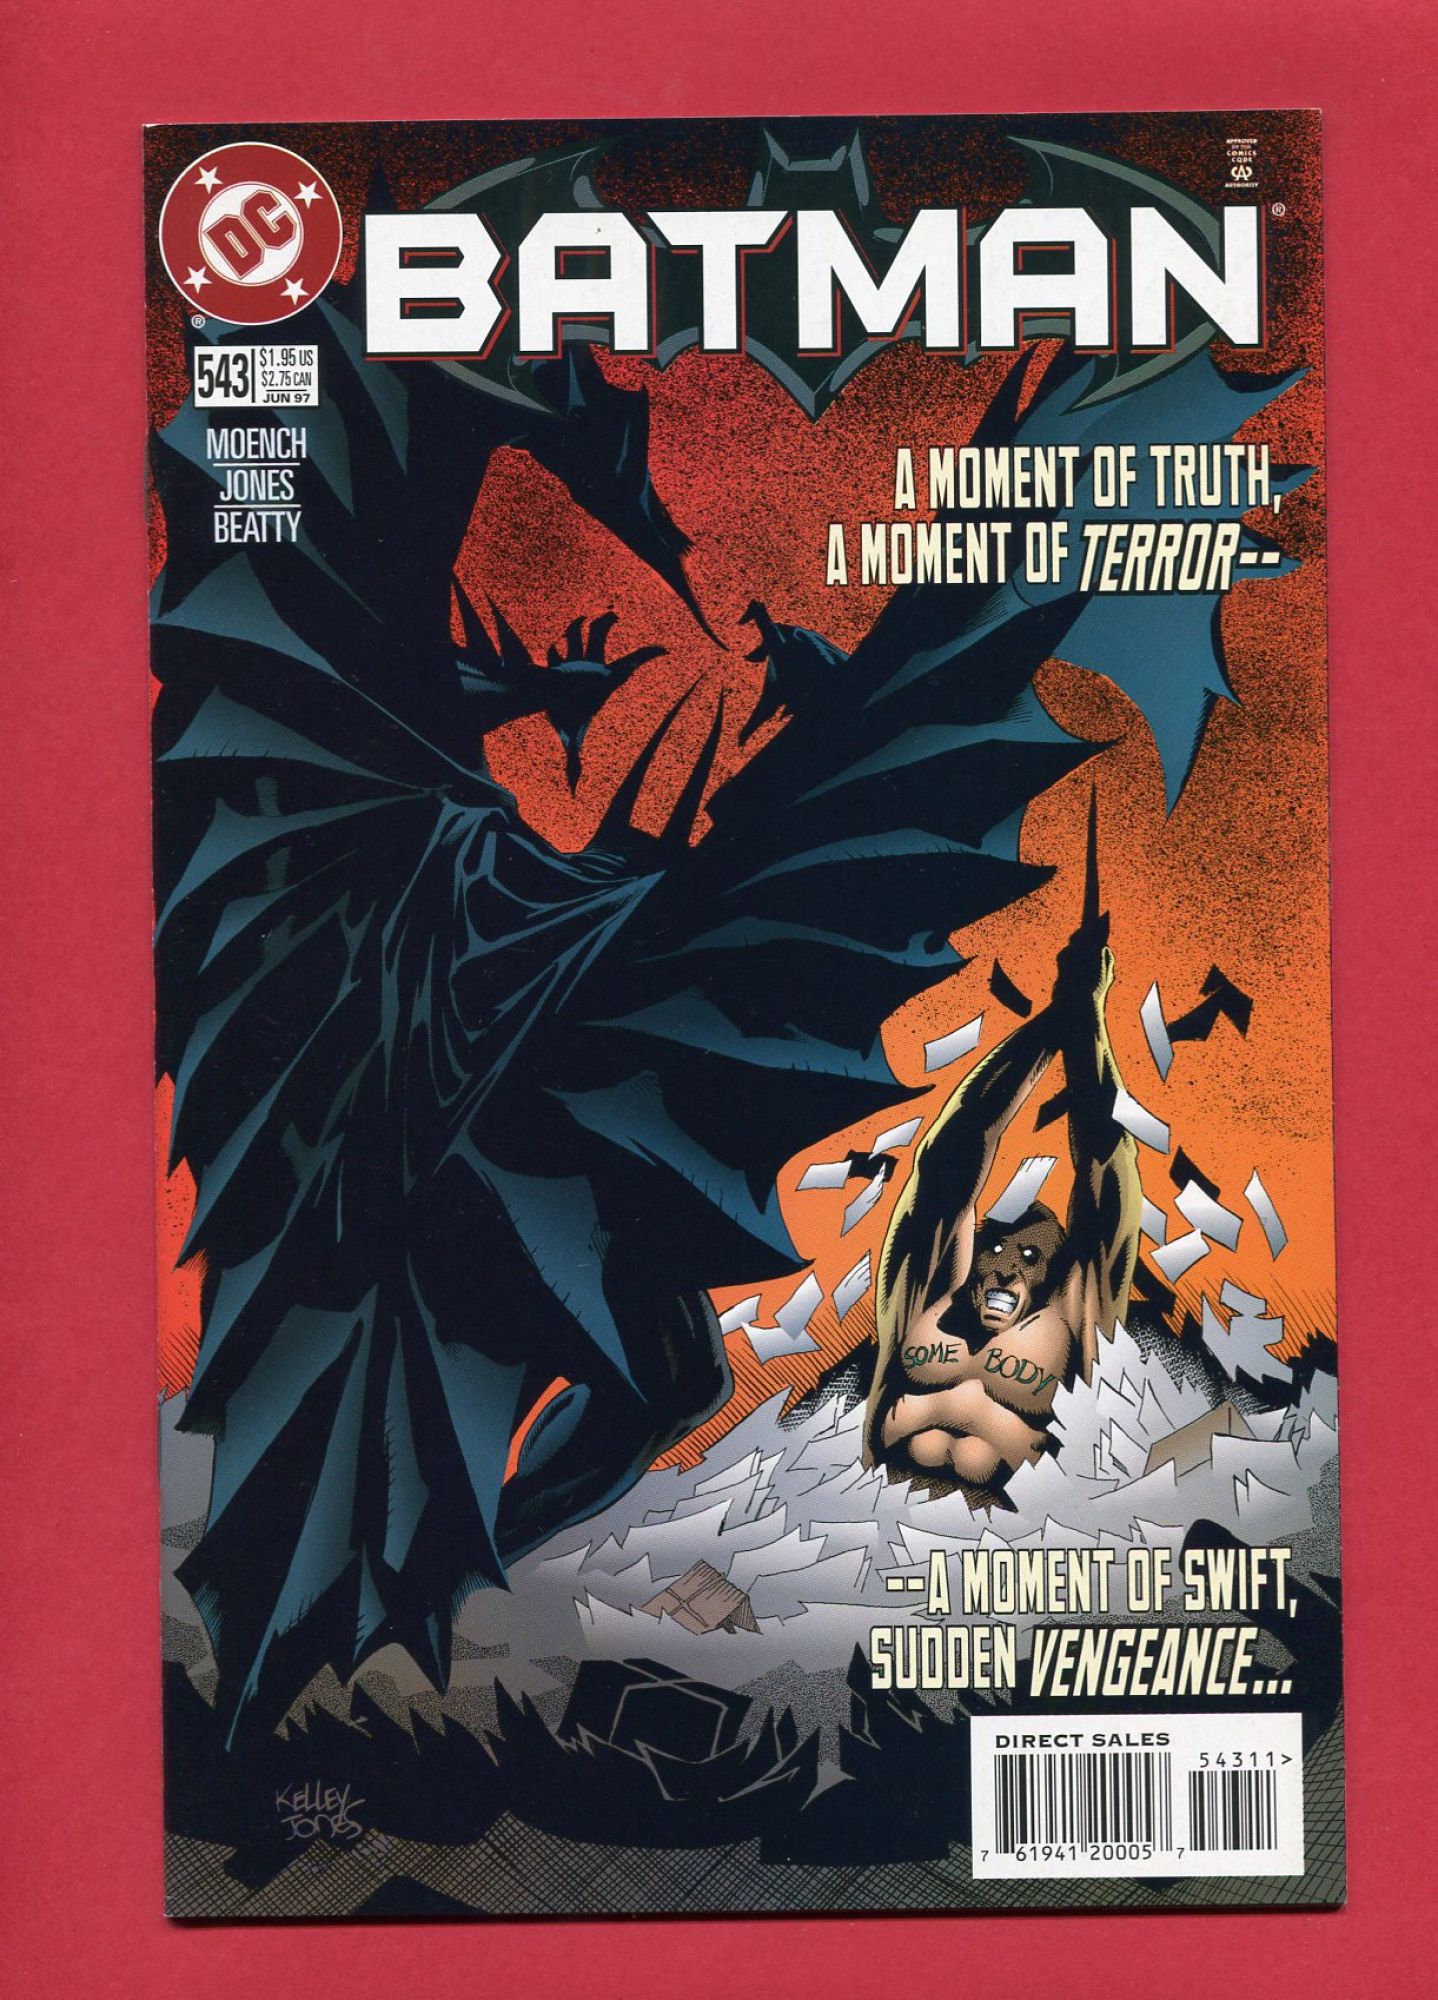 Batman #543, Jun 1997, 9.4 NM